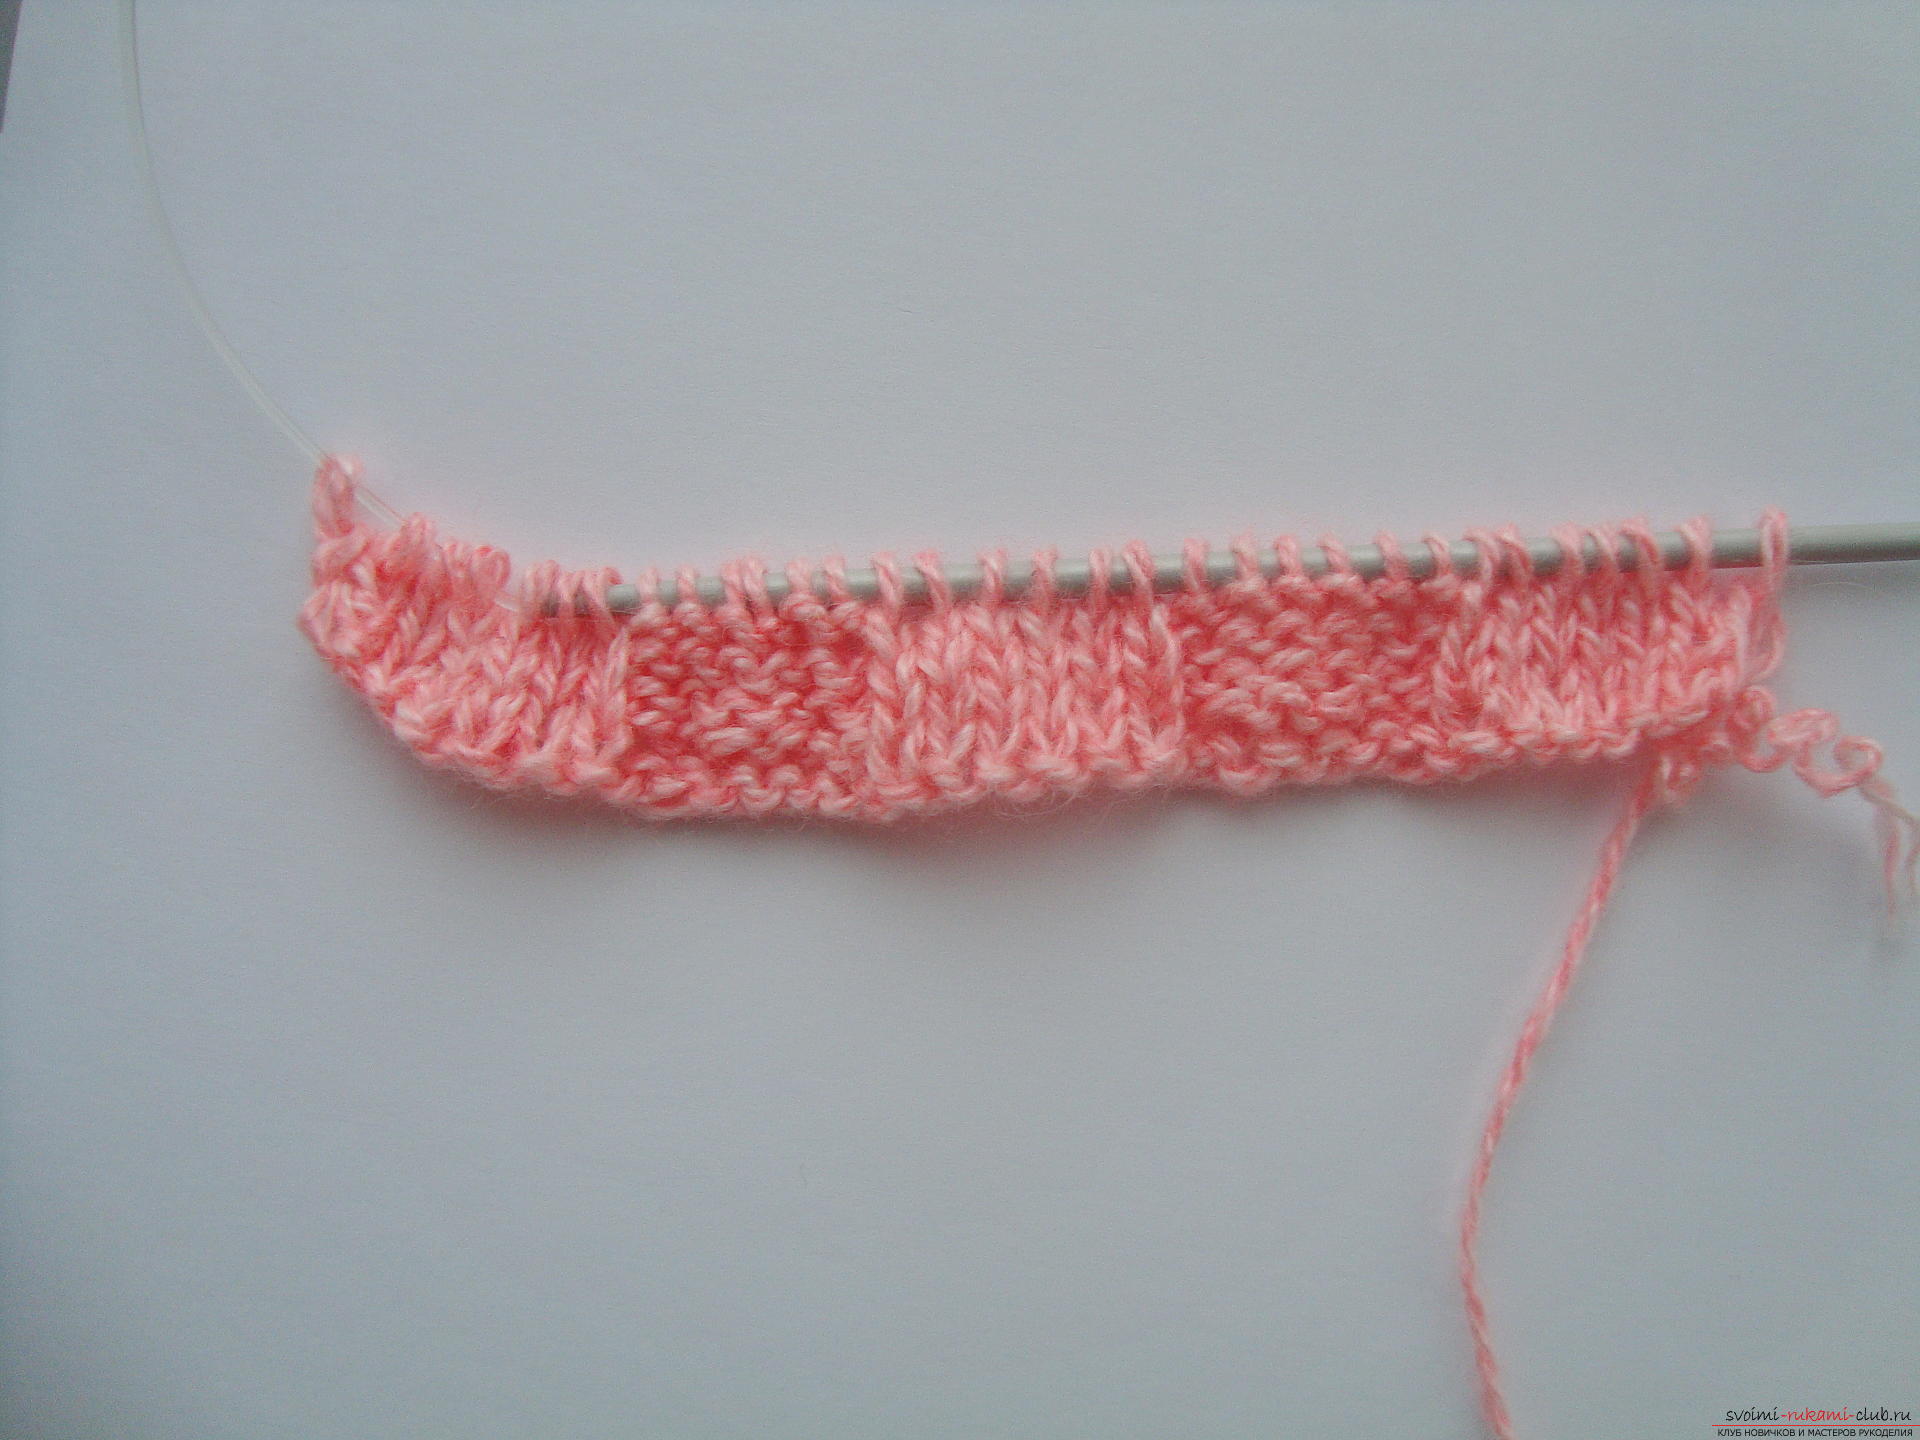 Photo-instruction on knitting needles-napkins under the hot. Photo №5